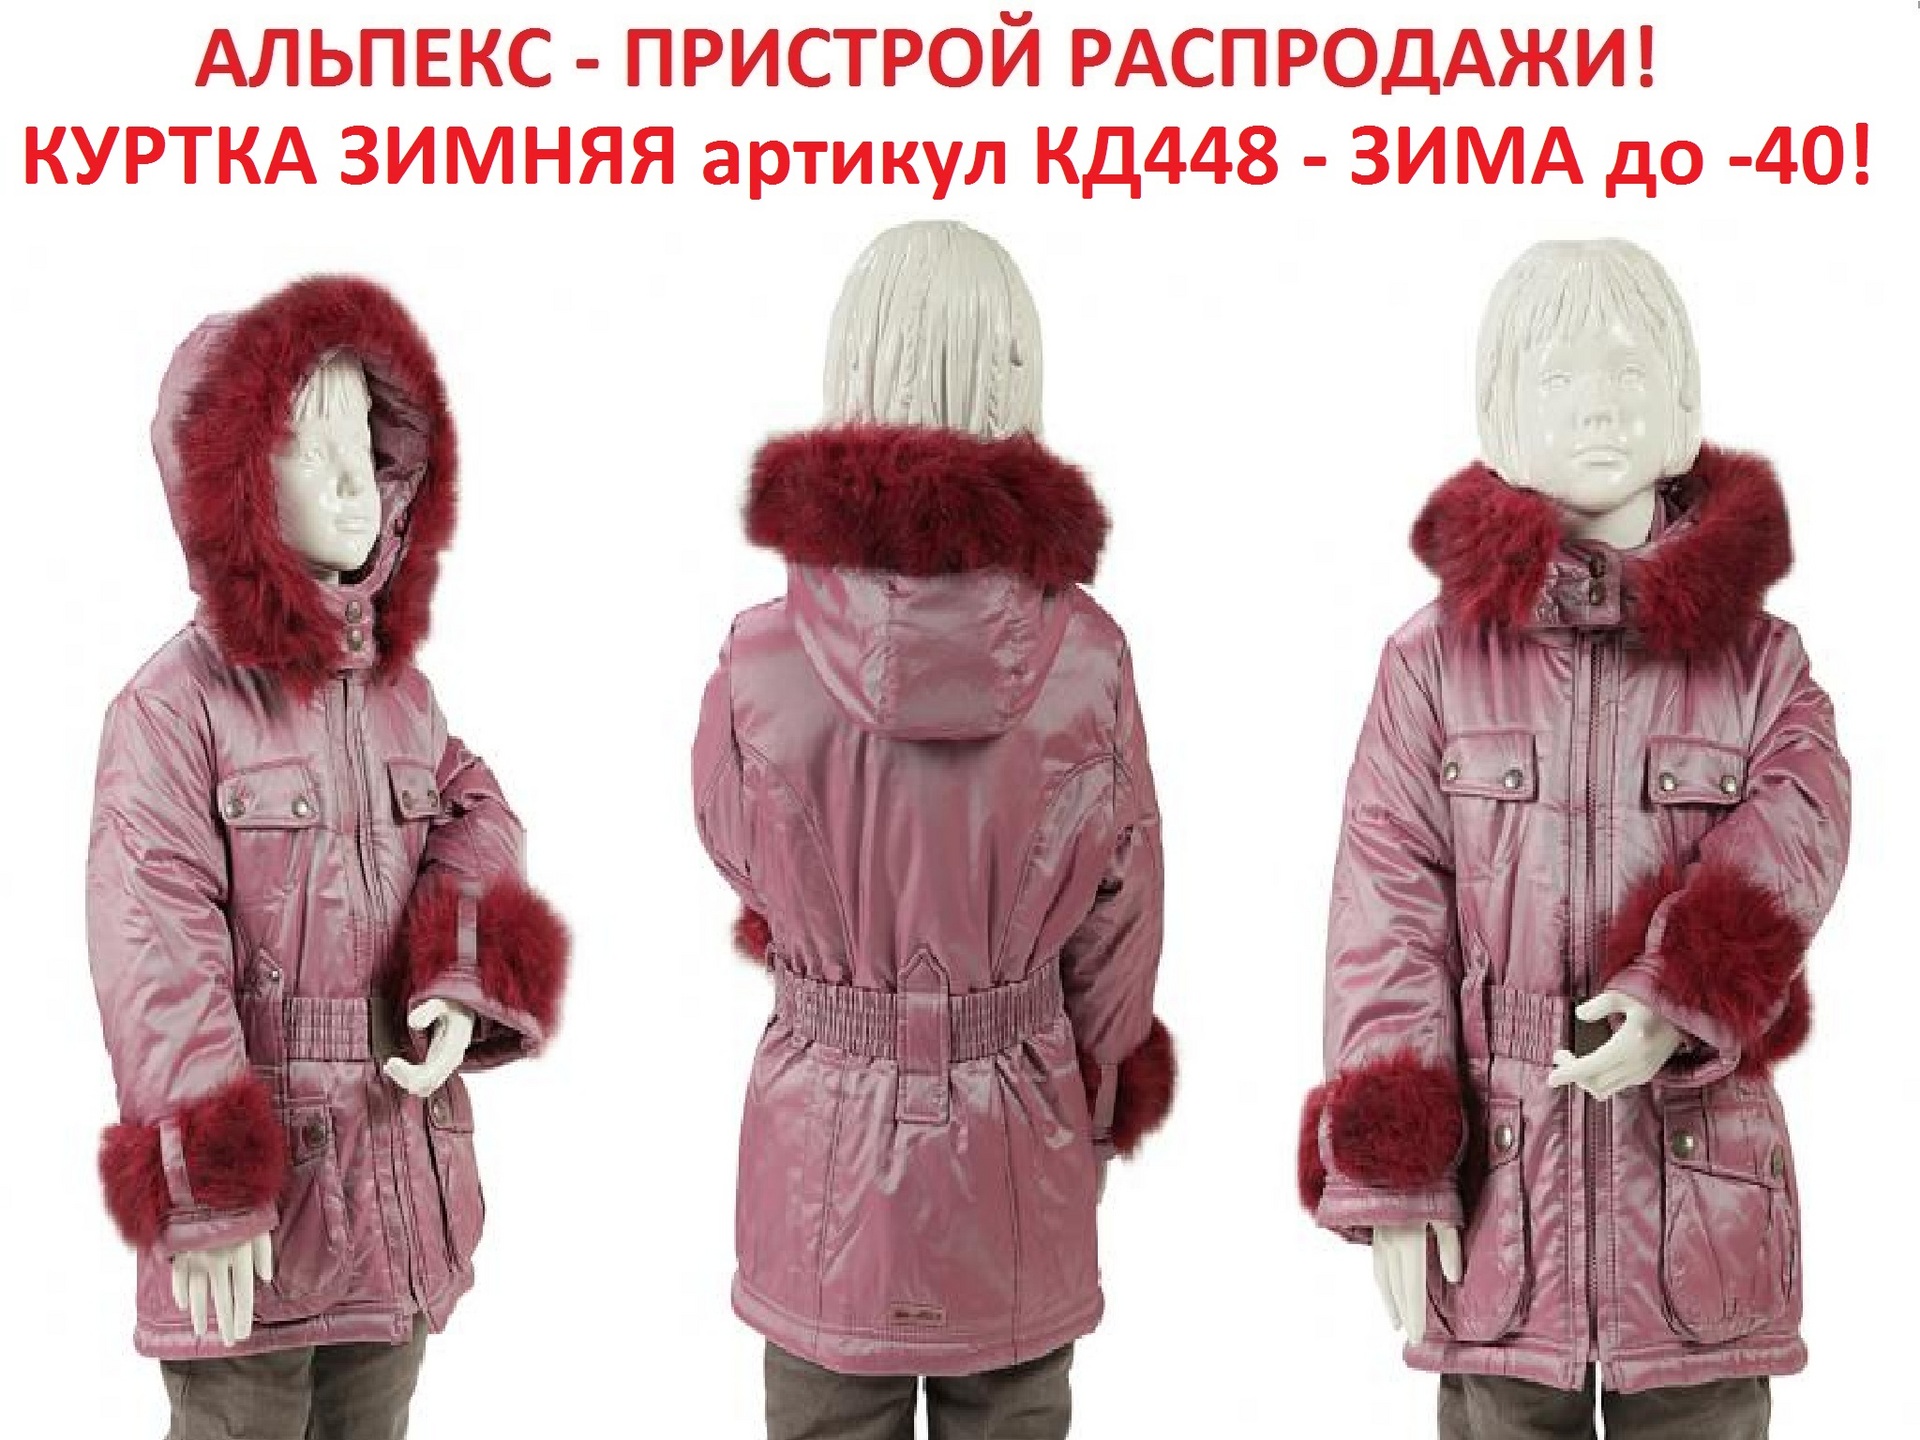 Где Купить Зимнюю Куртку В Ульяновске